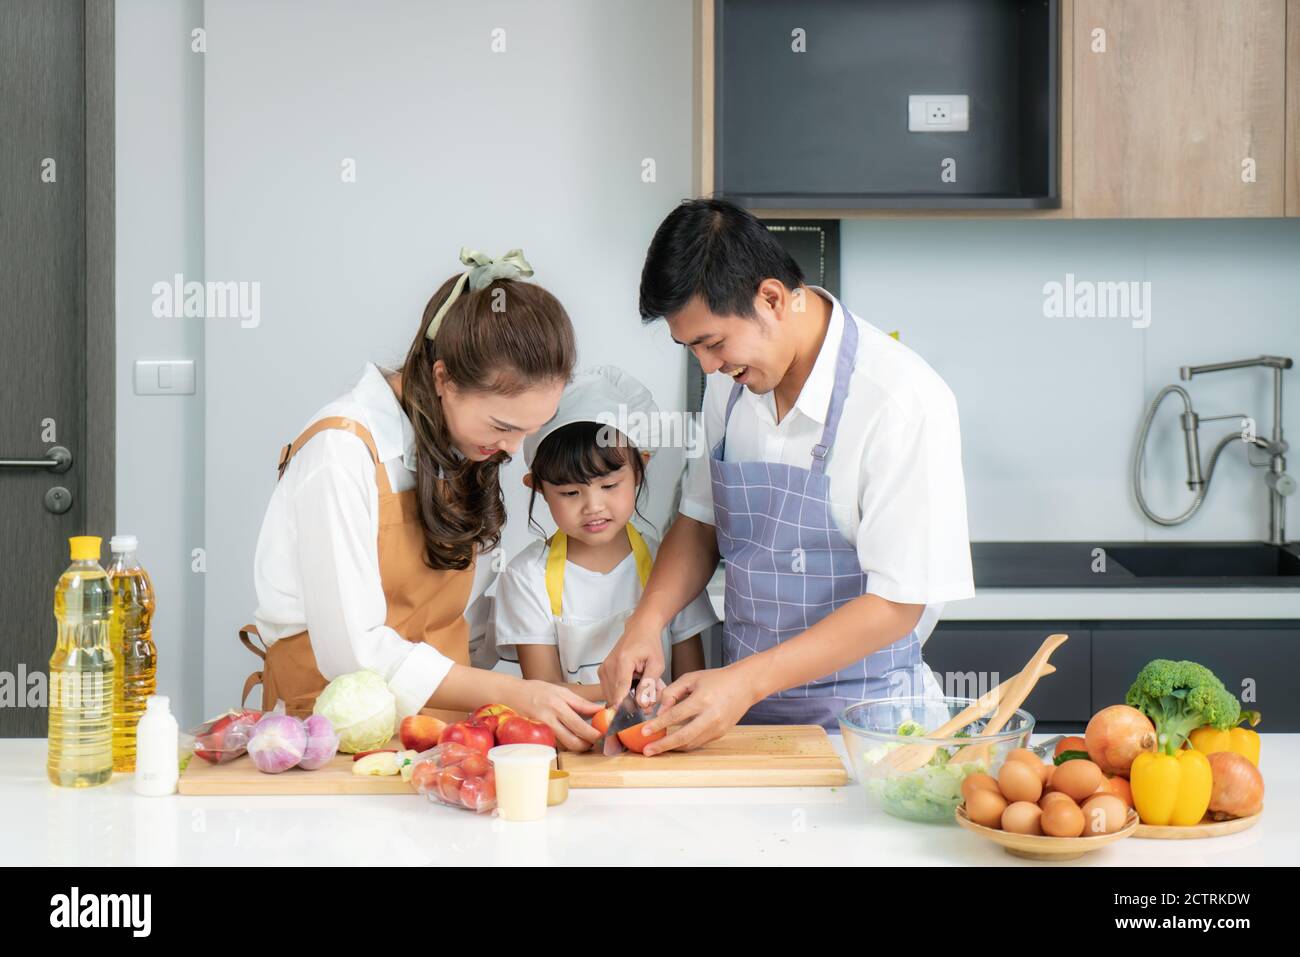 Junge asiatische Liebe Familie bereiten Salat Gemüse auf dem Tisch In der Küche, die Vater und Mutter lehren Tochter Kochen Essen am Tag um Stockfoto